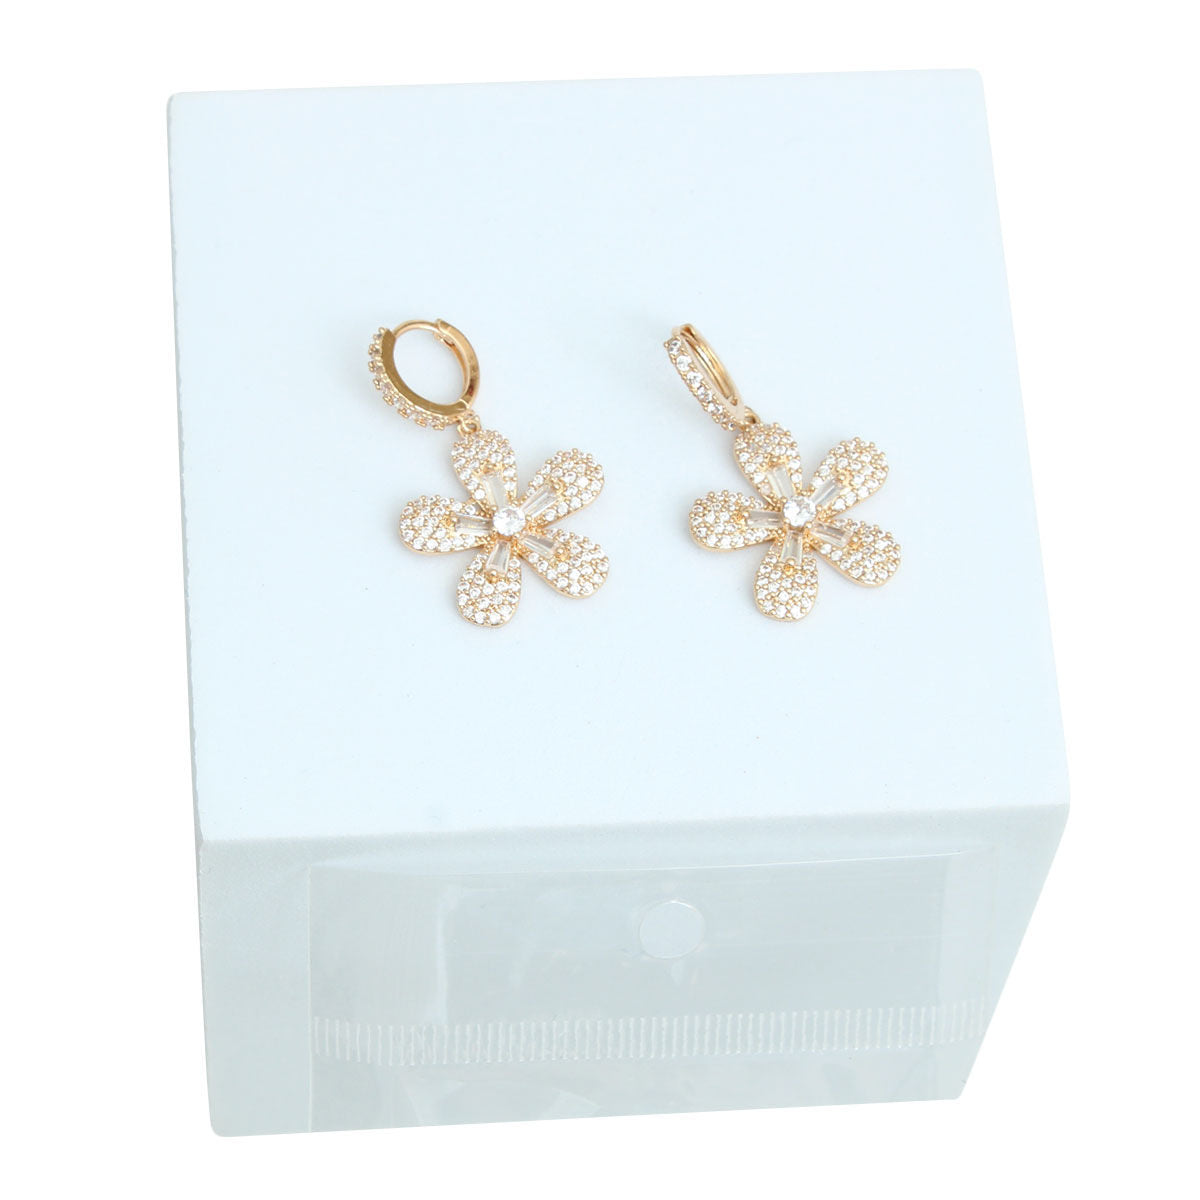 Earring Sets, w for women earrings, jewelry for women earrings